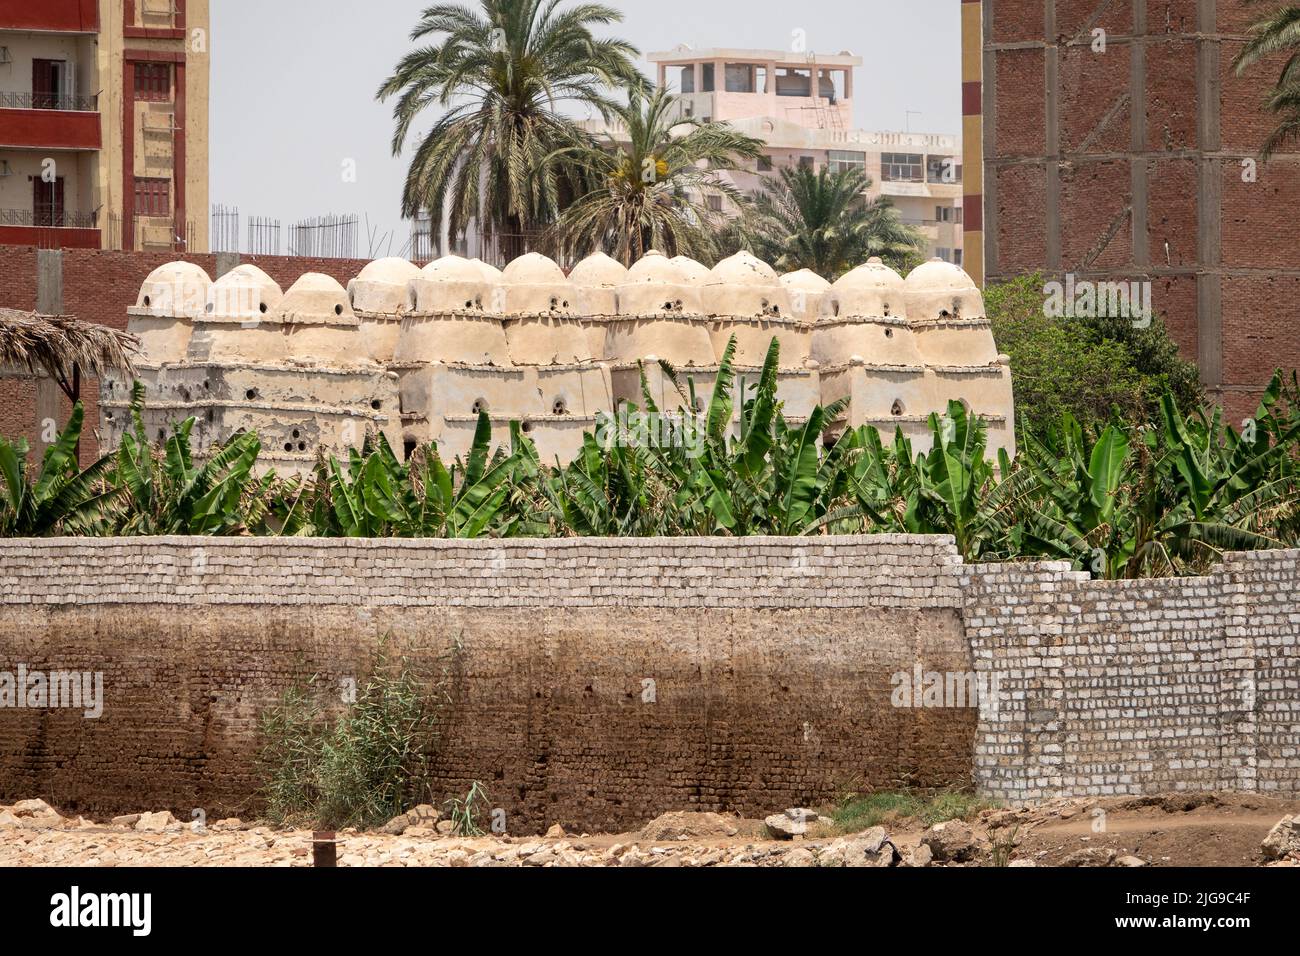 La propiedad doméstica y las casas de paloma en las orillas del río Nilo, Egipto Foto de stock